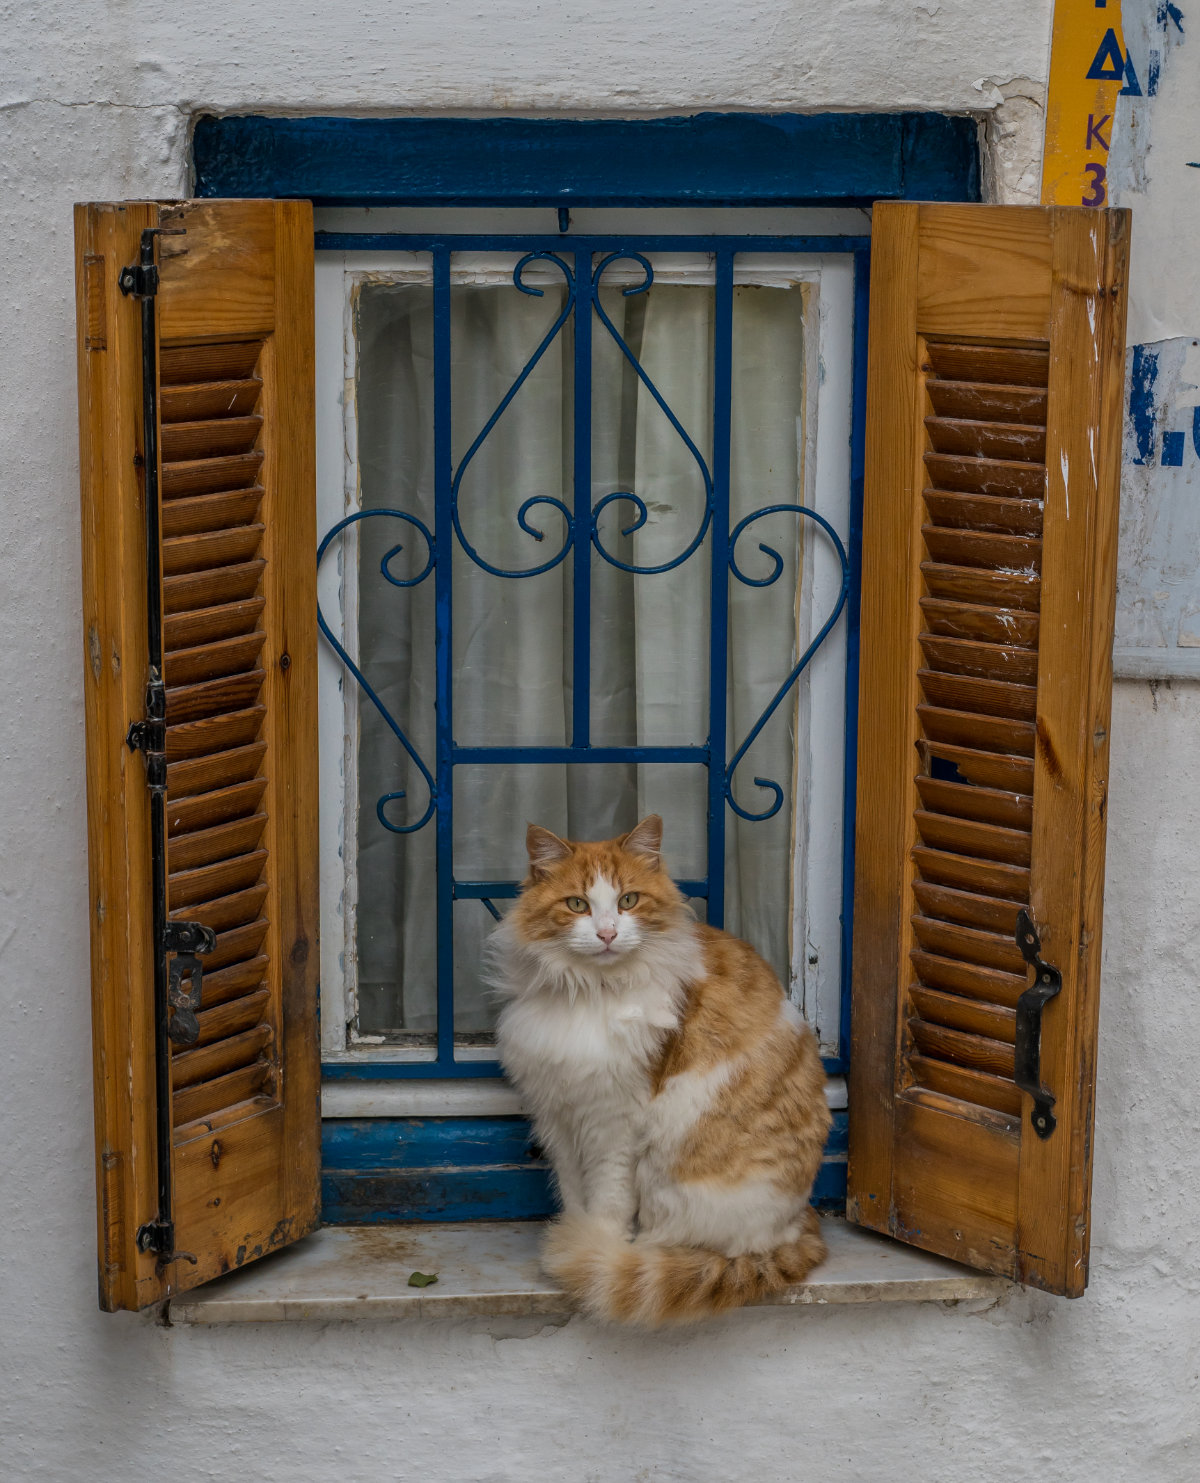 Griechenland, Athen, Katze